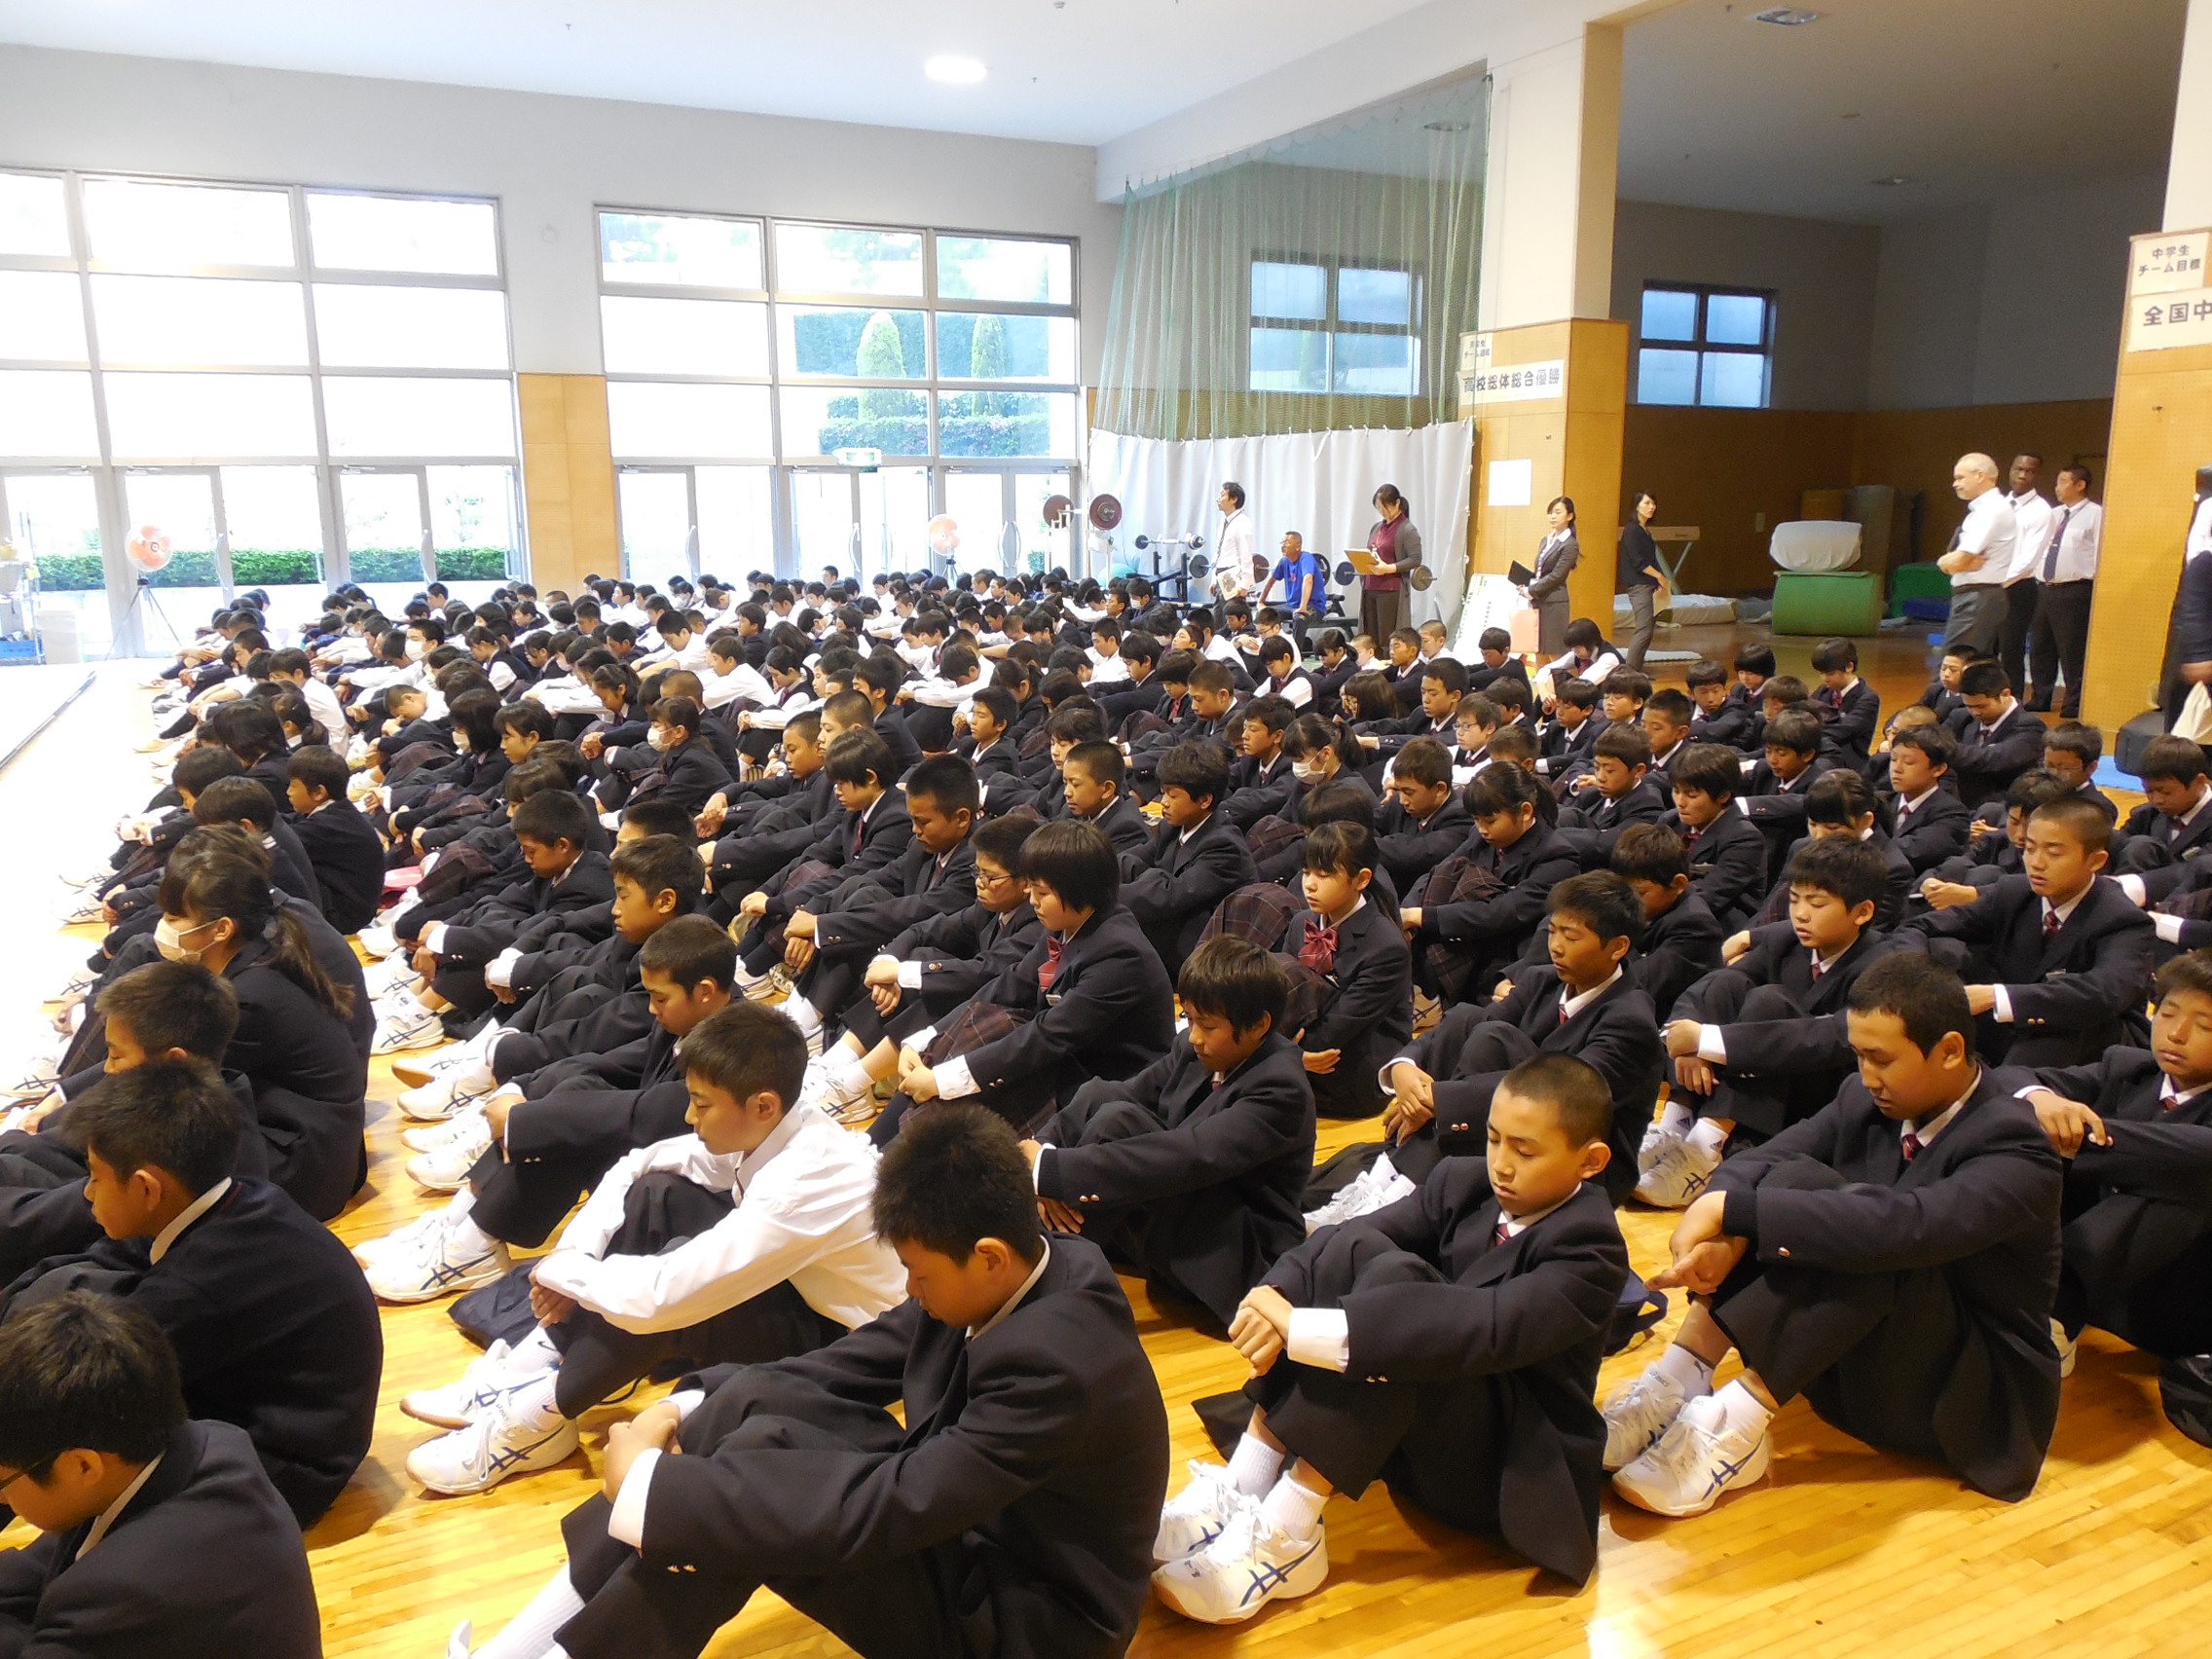 中学校高等学校全校集会を行いました 学校法人誠心学園 浜松開誠館中学校 高等学校